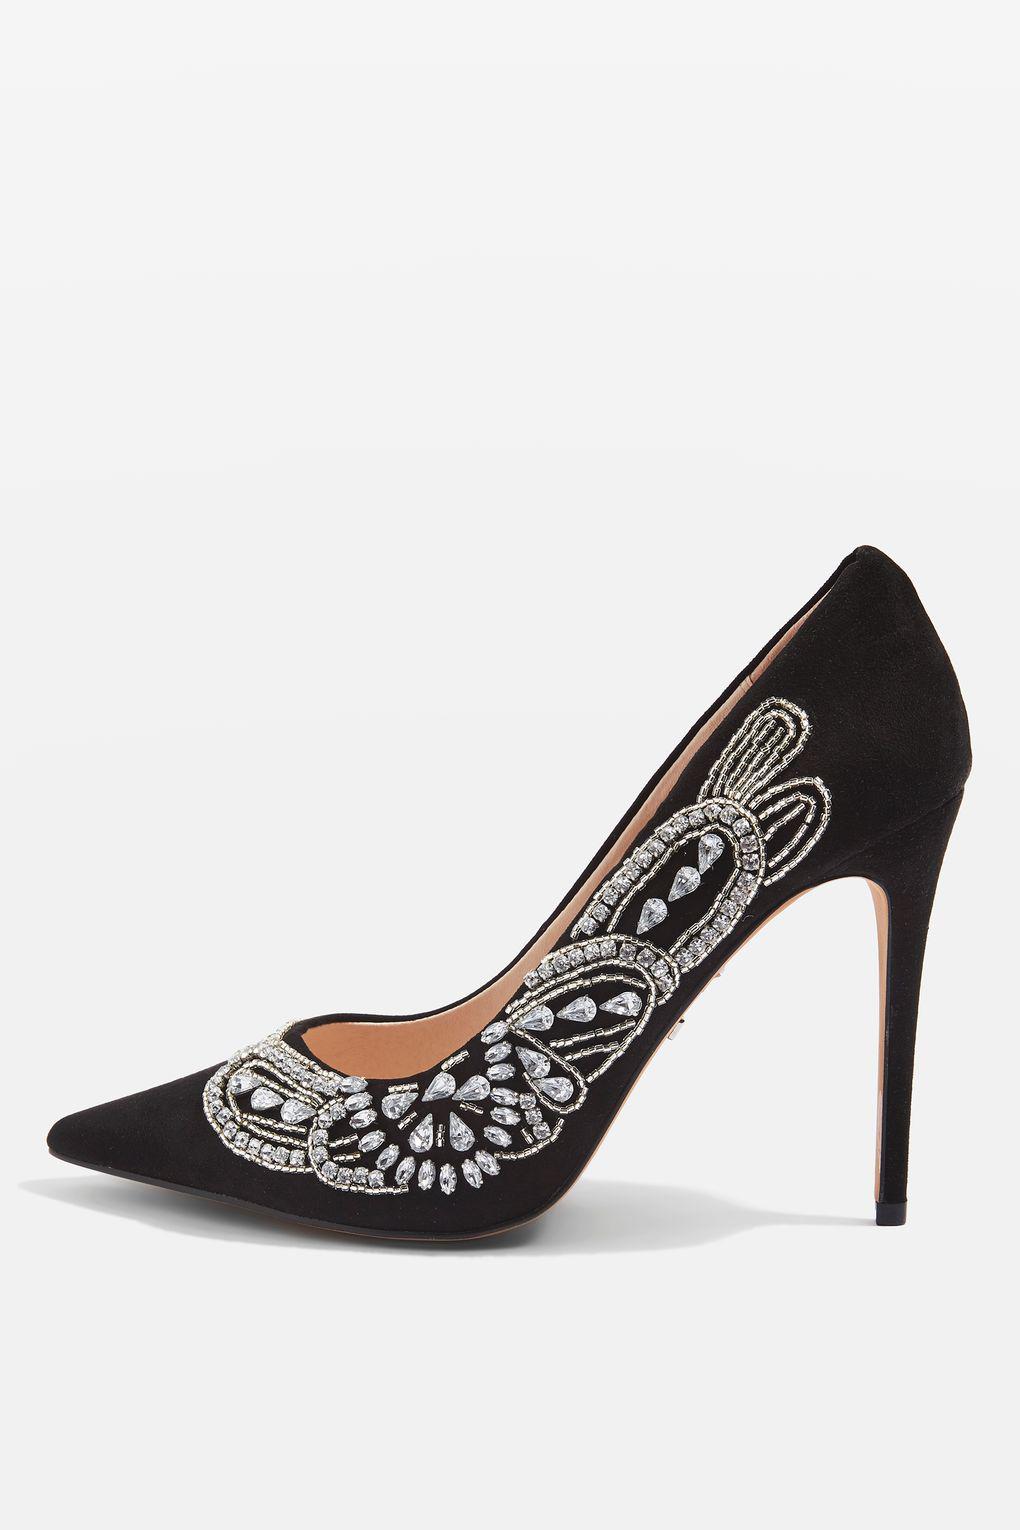 black embellished court shoes